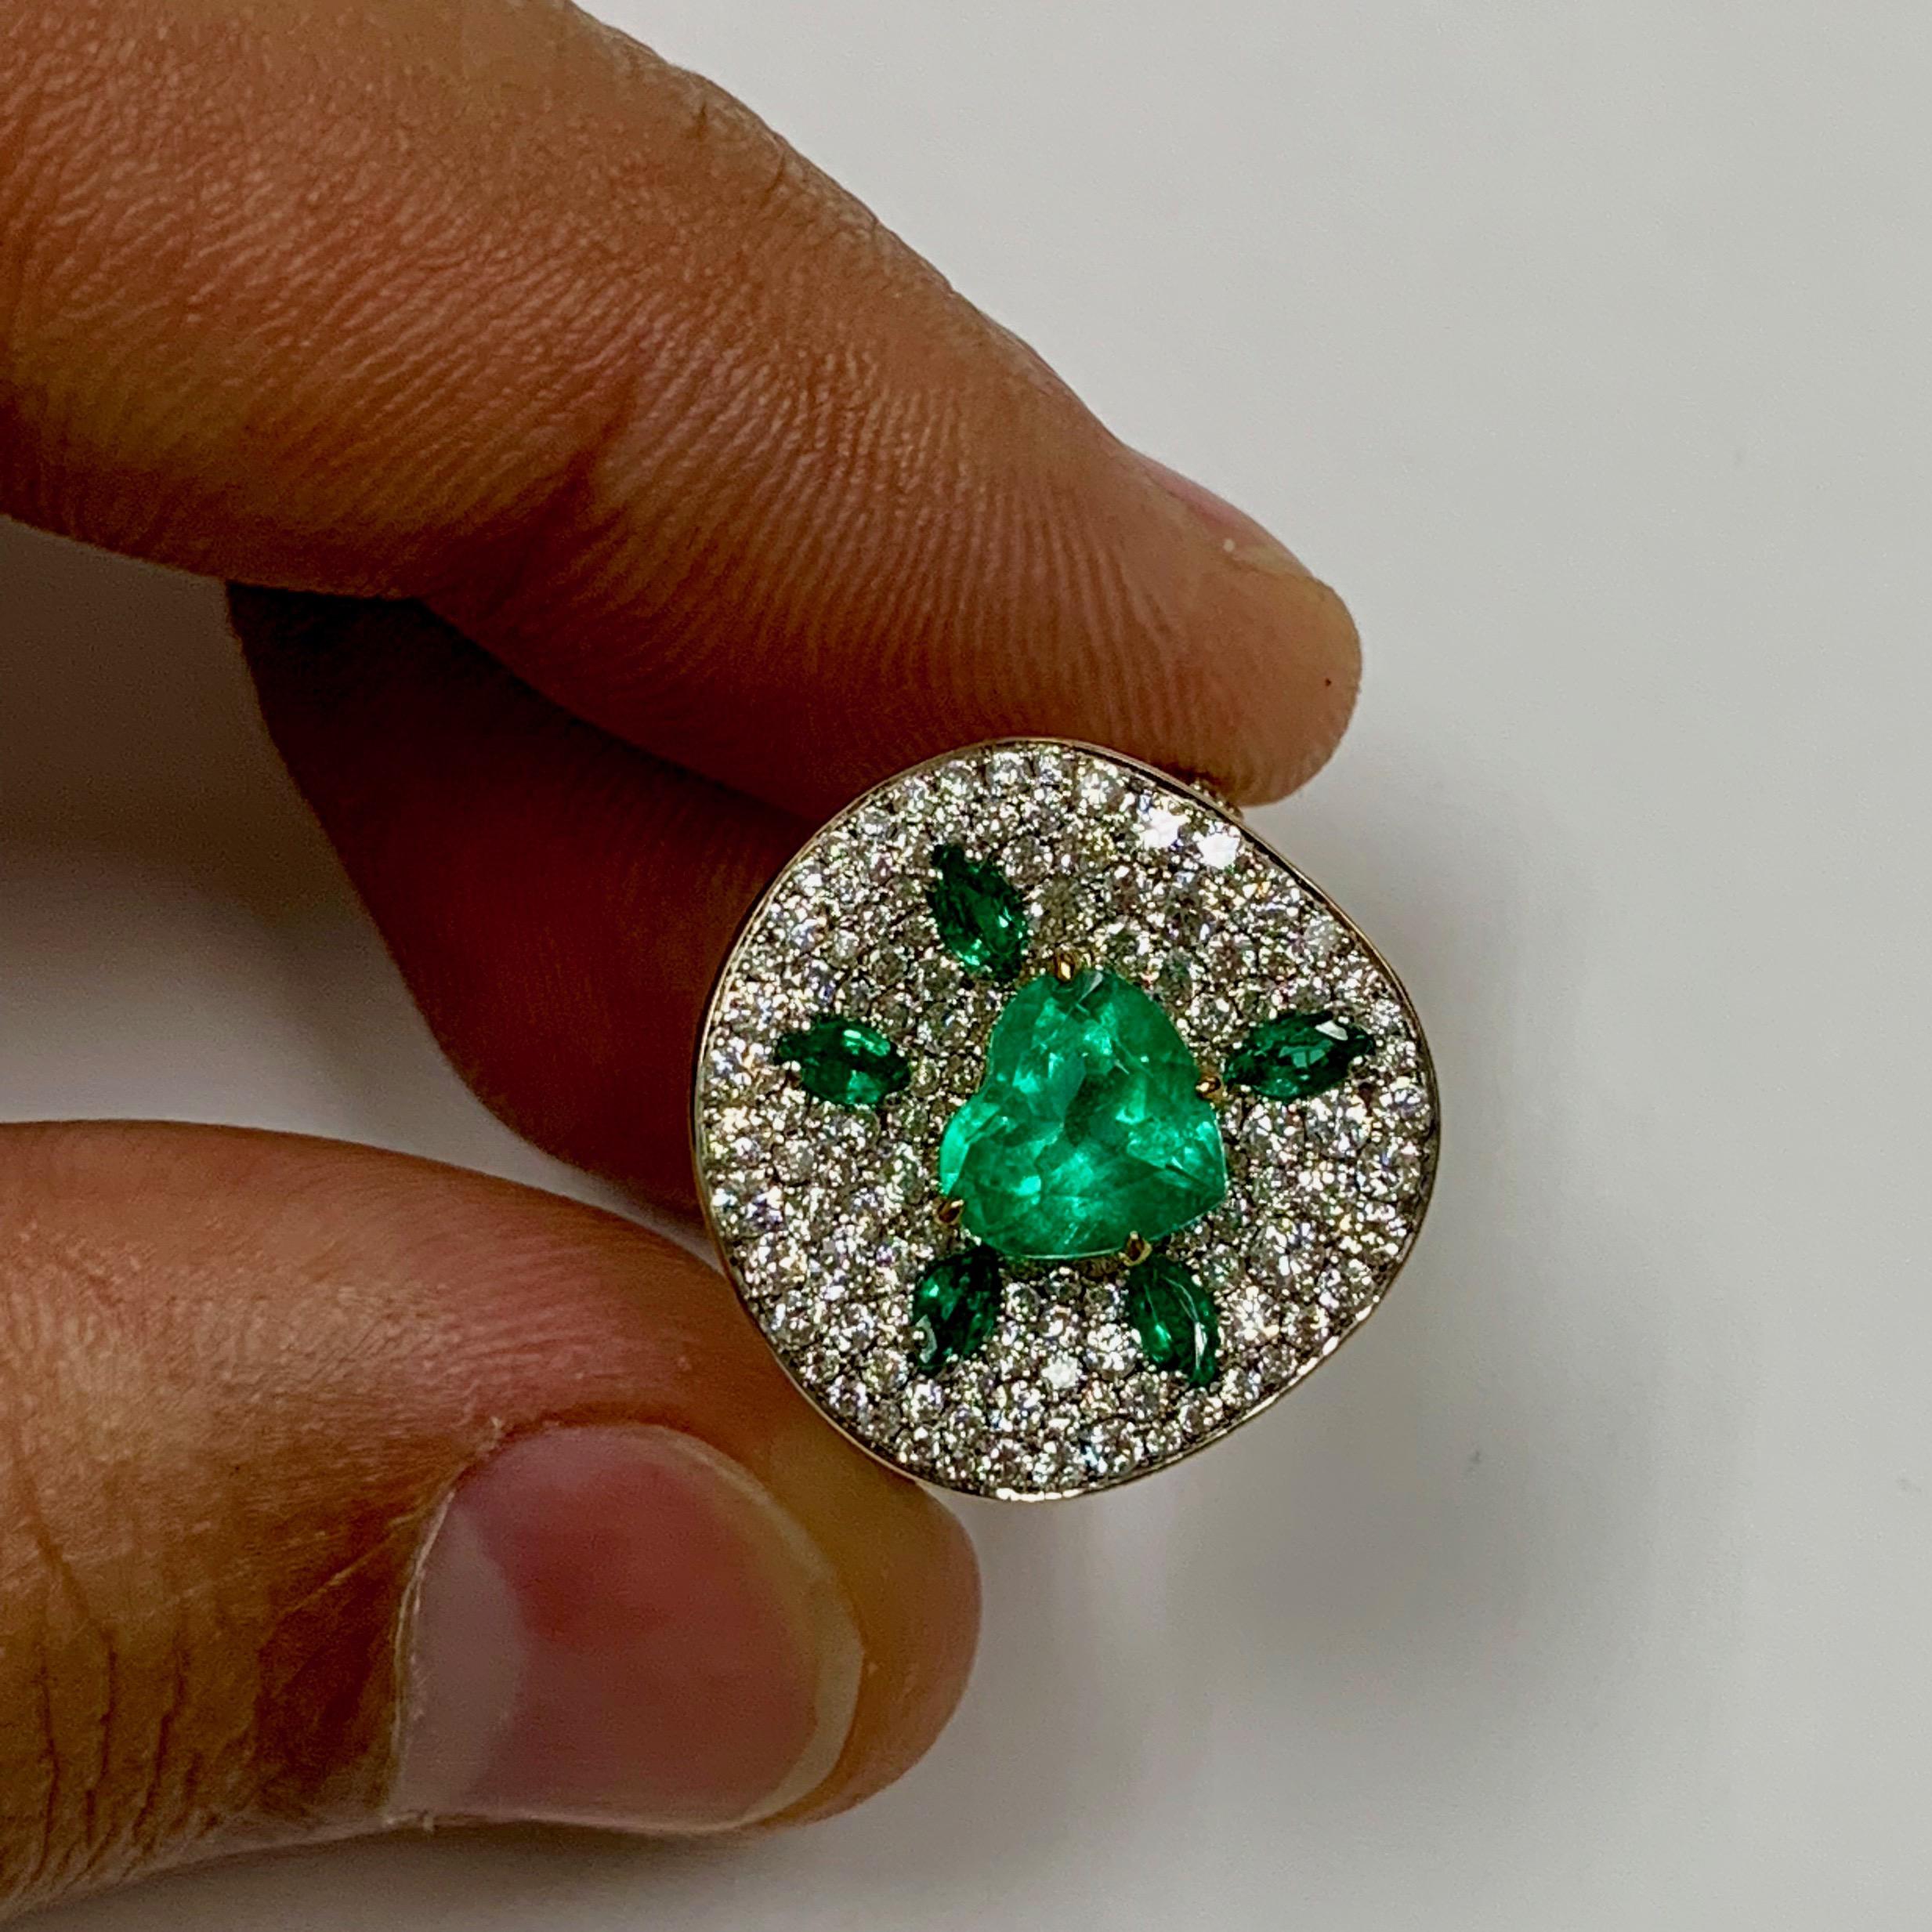 Kolumbianischer Smaragd-Diamant-Ring aus 18 Karat Gelbgold 
Smaragde und Diamanten - eine stets gewinnbringende Kombination. Hier unterstützen wir den zentralen kolumbianischen Smaragd von 1,37 Karat mit 1,93 Karat reinen weißen Diamanten. 

Bitte